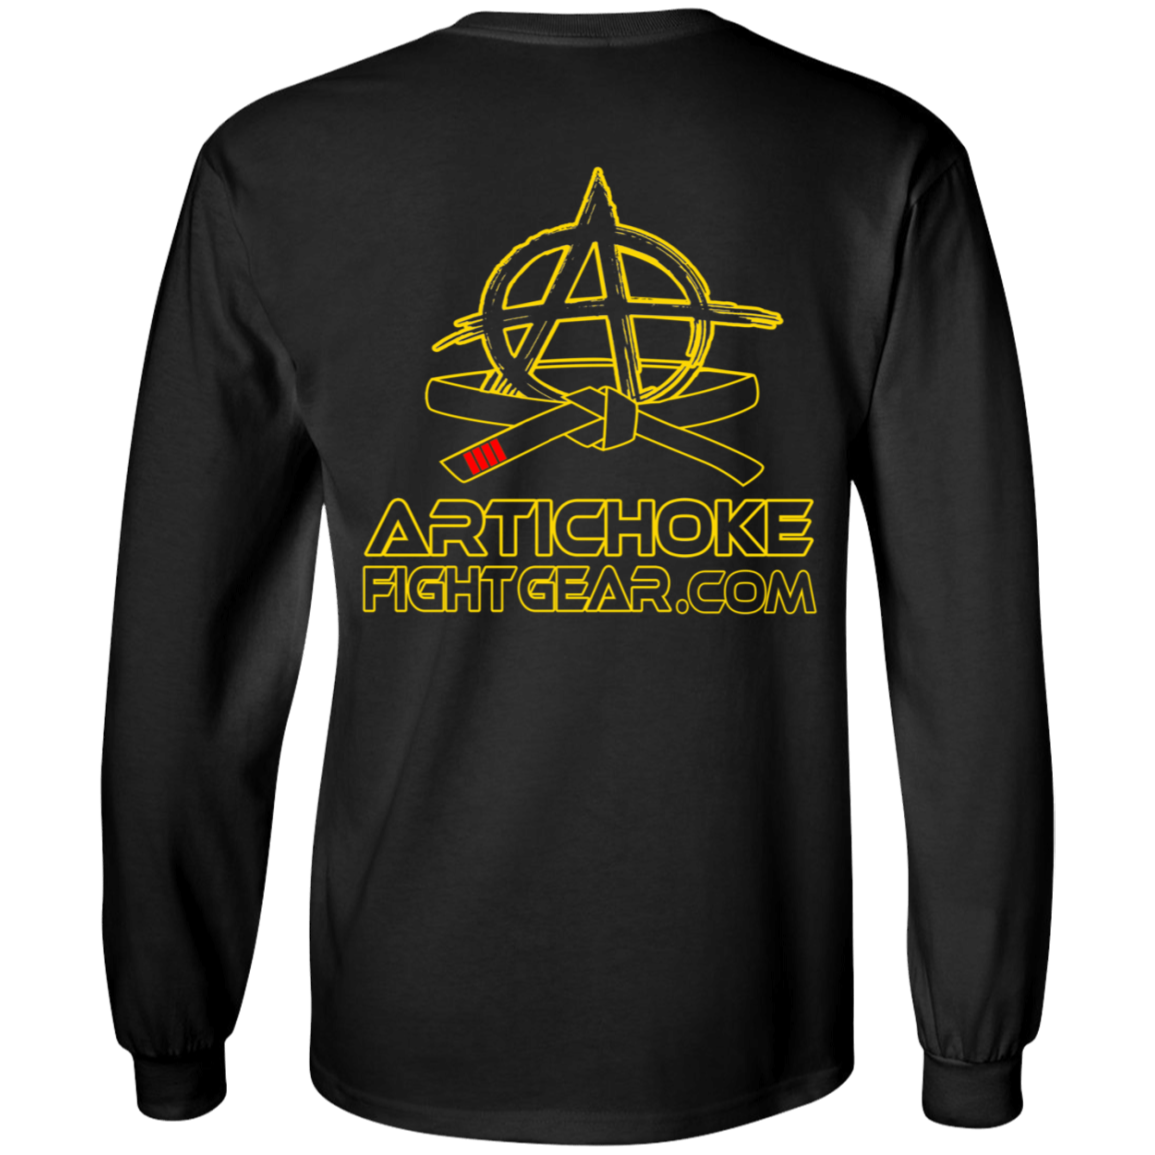 Artichoke Fight Gear Custom Design #20. You Don't Know the Power of Jiu Jitsu. 100% Cotton Long Sleeve